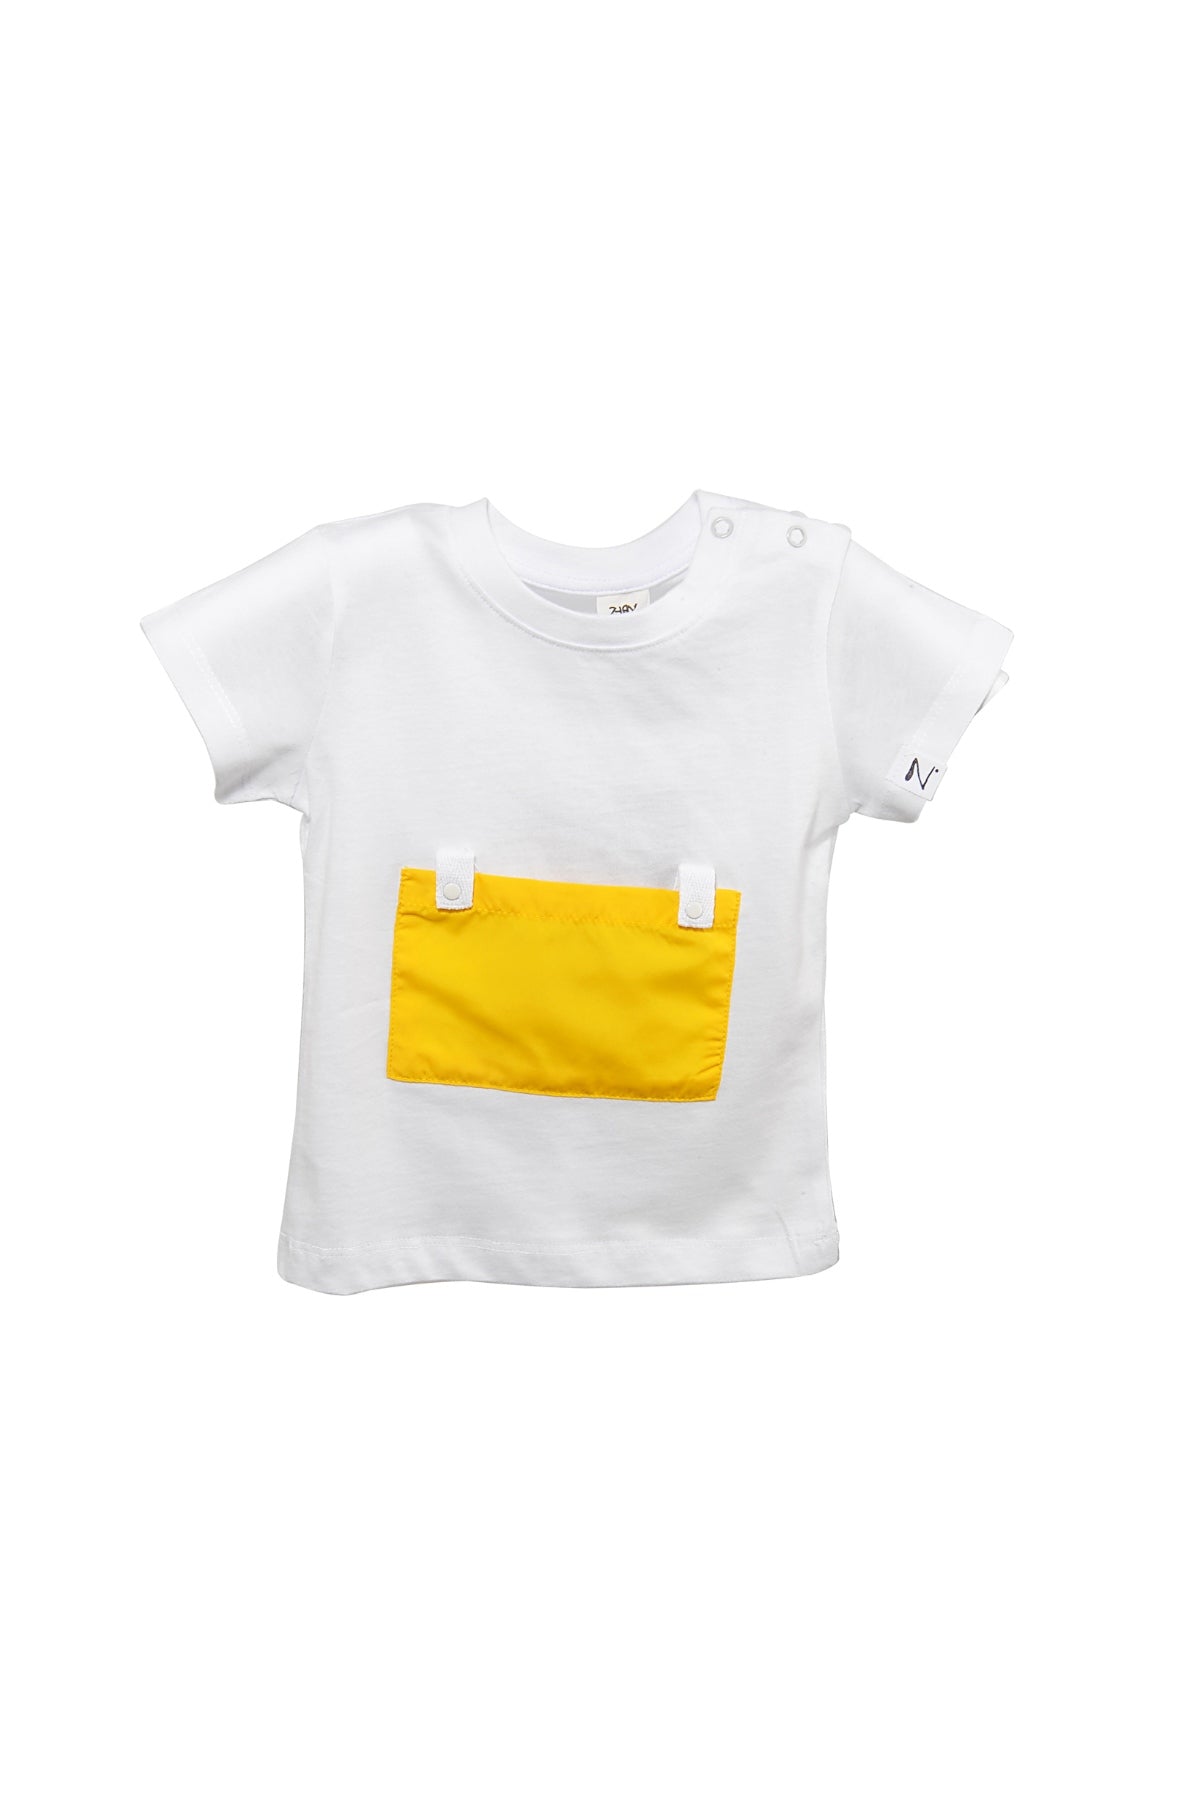 Erkek Bebek Yaka Çıtçıtlı Sarı Cepli Beyaz T-Shirt (9ay-4yaş)-3